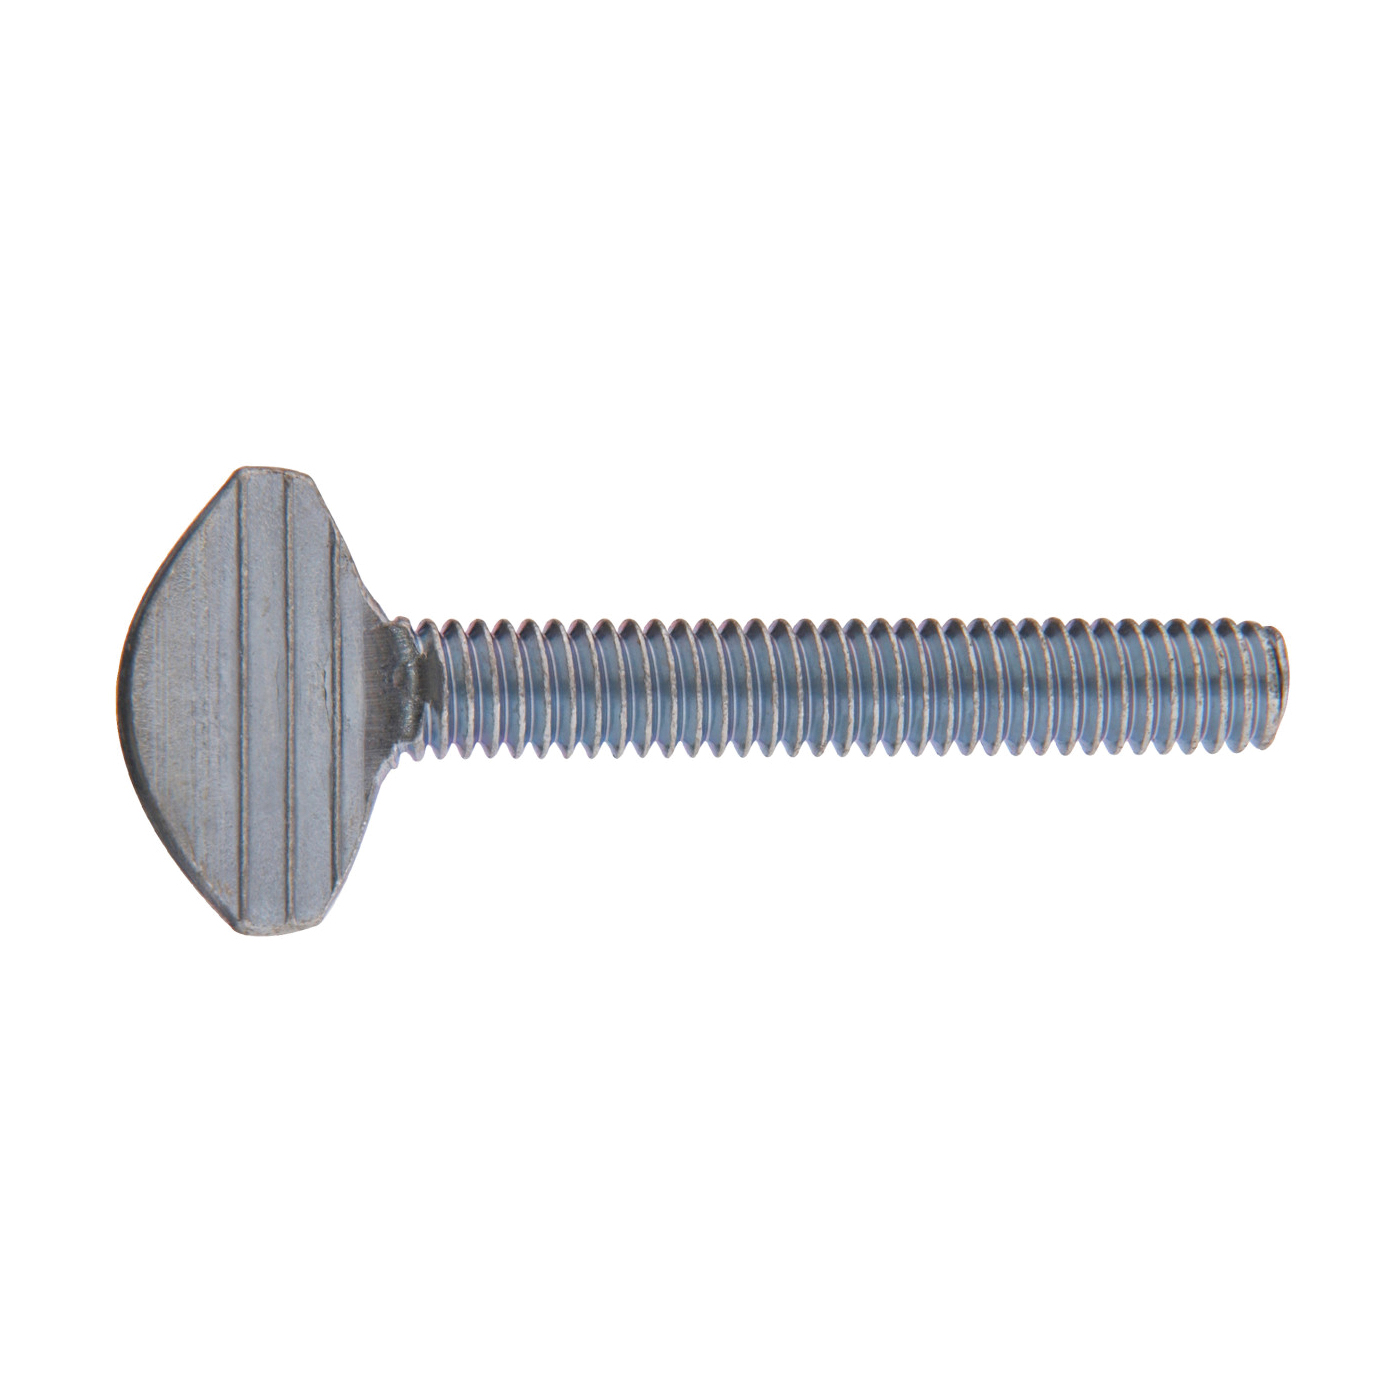 880947 Machine Screw, #10-24 Thread, 2 in L, Zinc-Plated